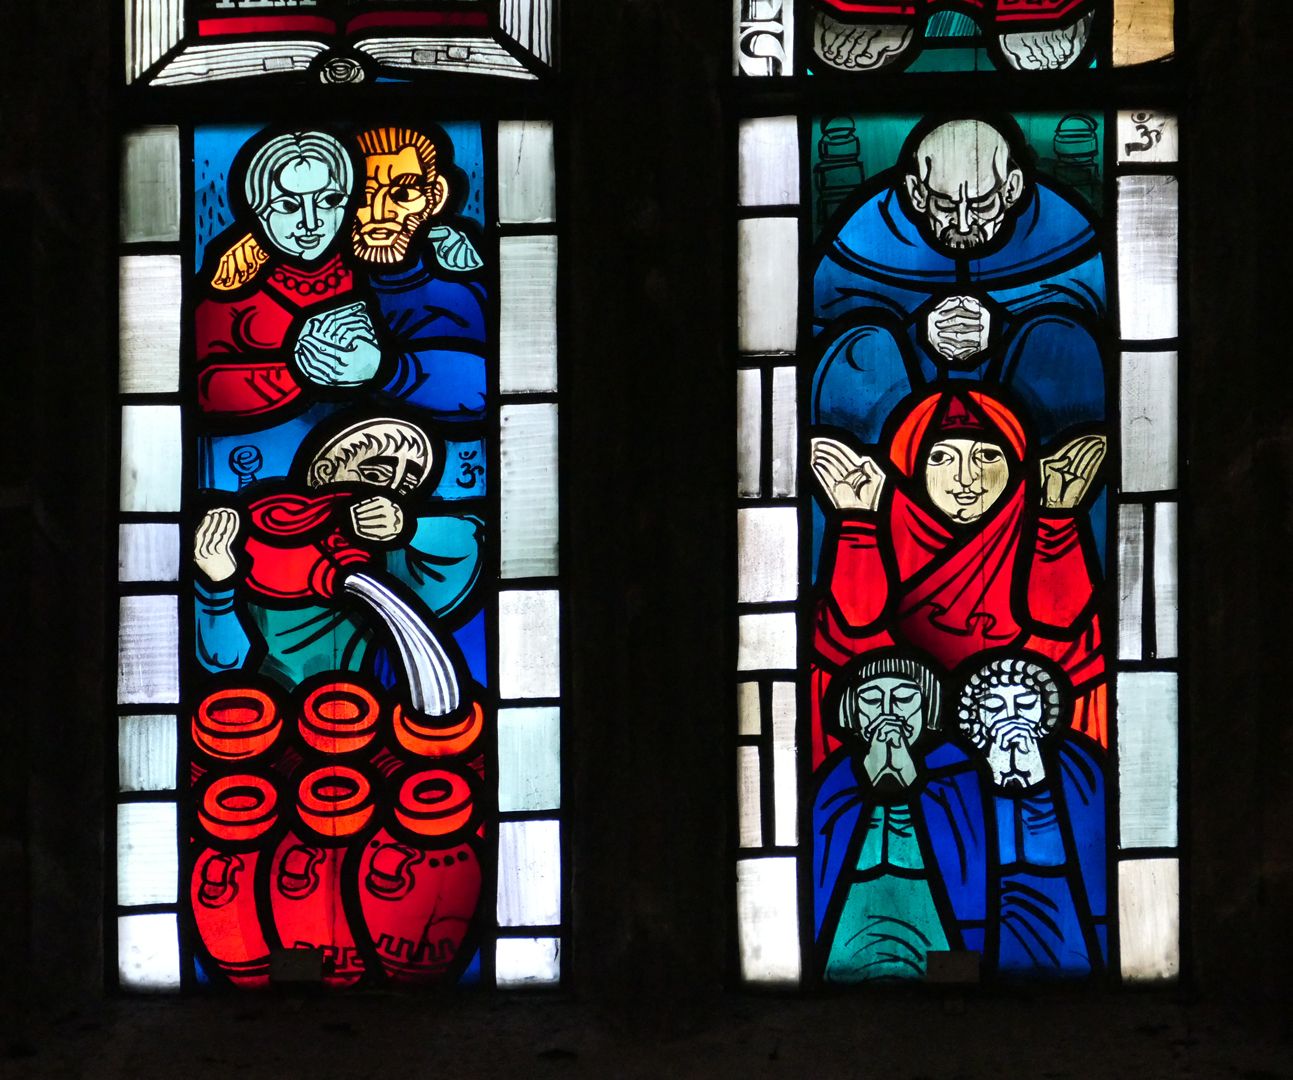 Evangelistenfenster / Johannes untere Fensterreihe: links, Hochzeit von Kanaa mit der Verwandlung von Wasser zu Wein / rechts, vier Gebetshaltungen (oben rechts und an anderer Stelle das "Om" Zeichen des Künstlers)